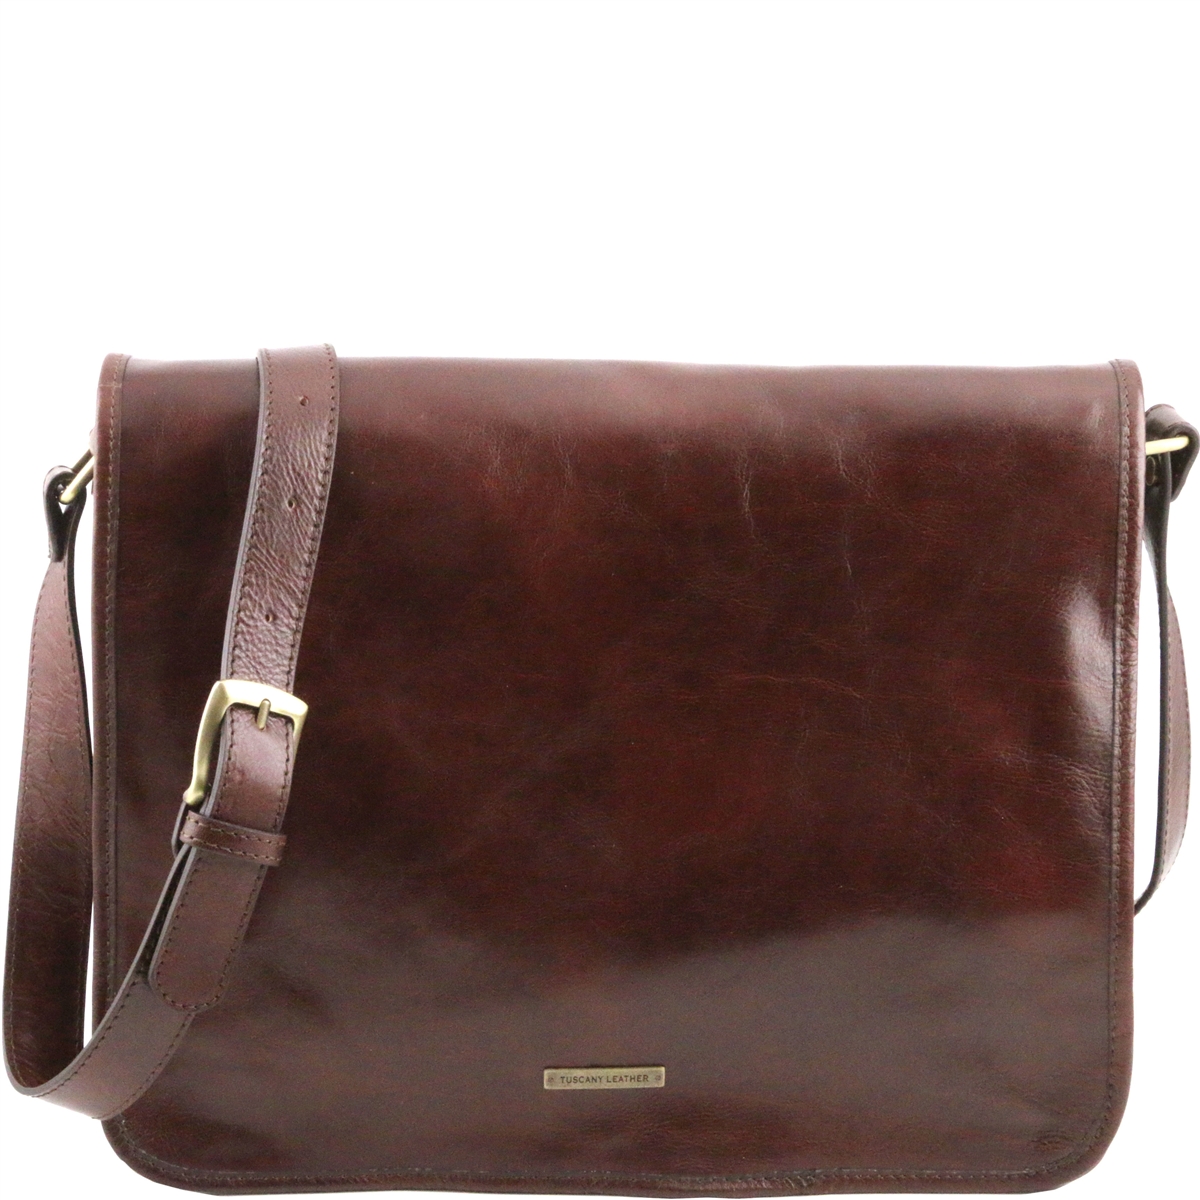 Leather Messenger Bag for Men - Brown | Shop Online